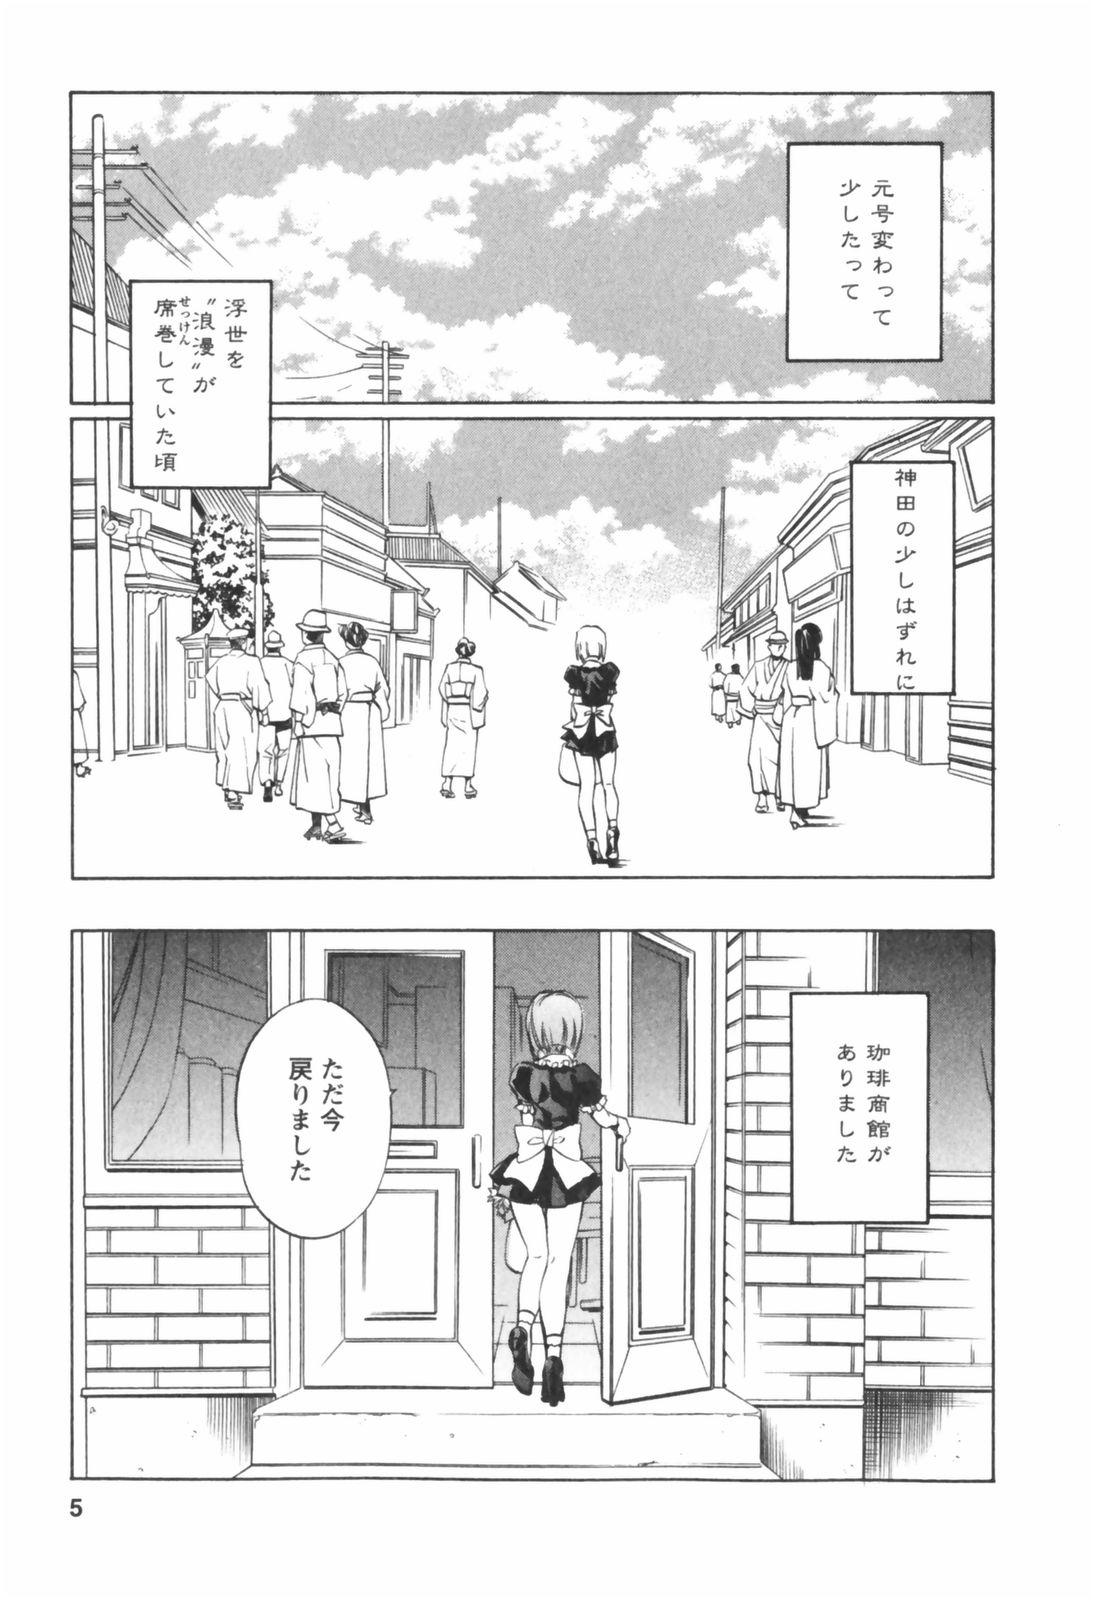 Atm Kohaku No Hana Fantasy - Page 5